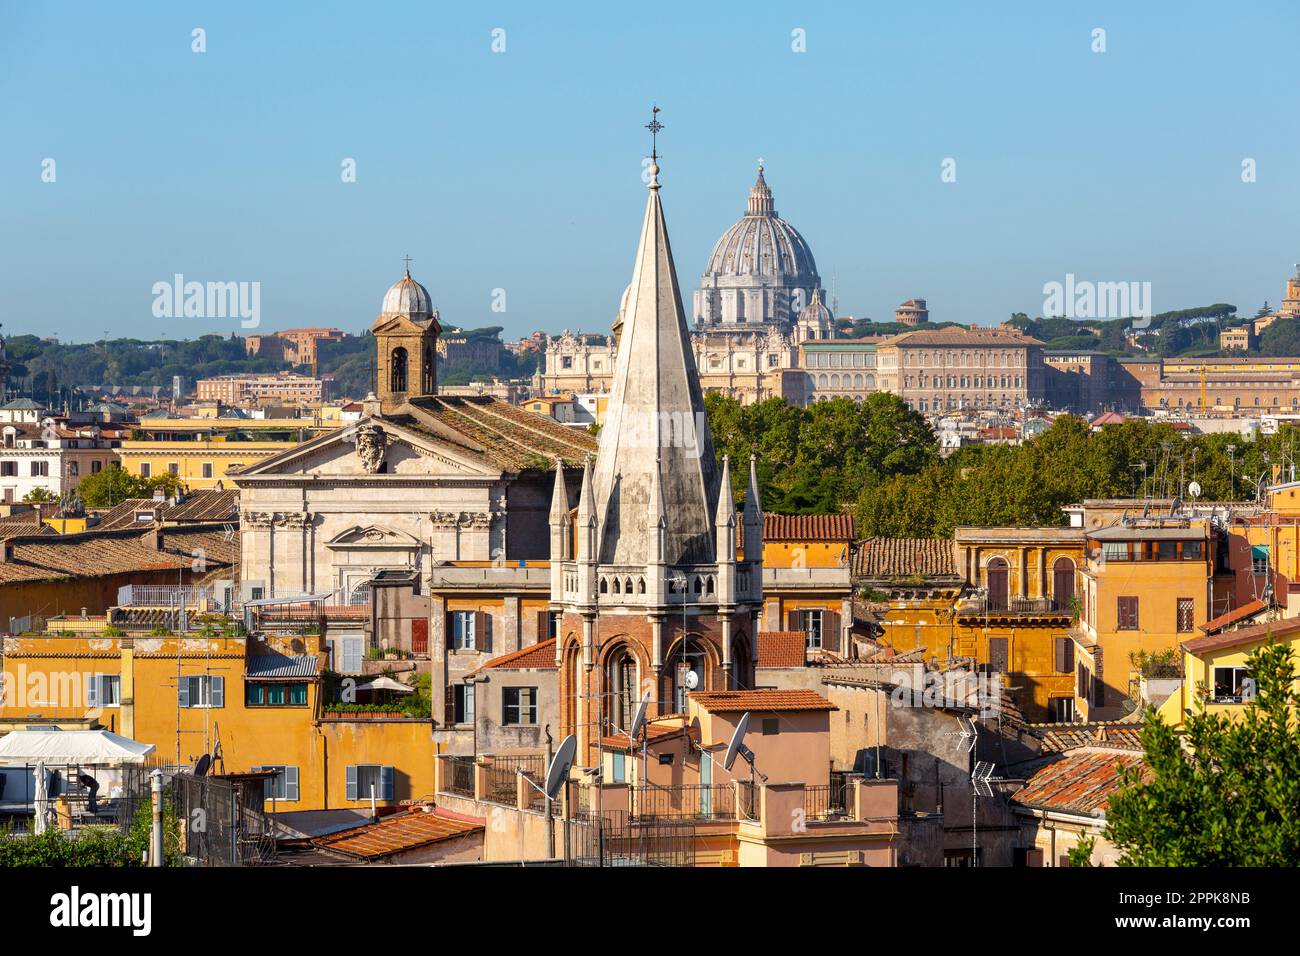 Vue aérienne de la ville avec la basilique Saint-Pierre dans la Cité du Vatican au loin et la tour de l'église de tous les Saints, Rome, Italie Banque D'Images